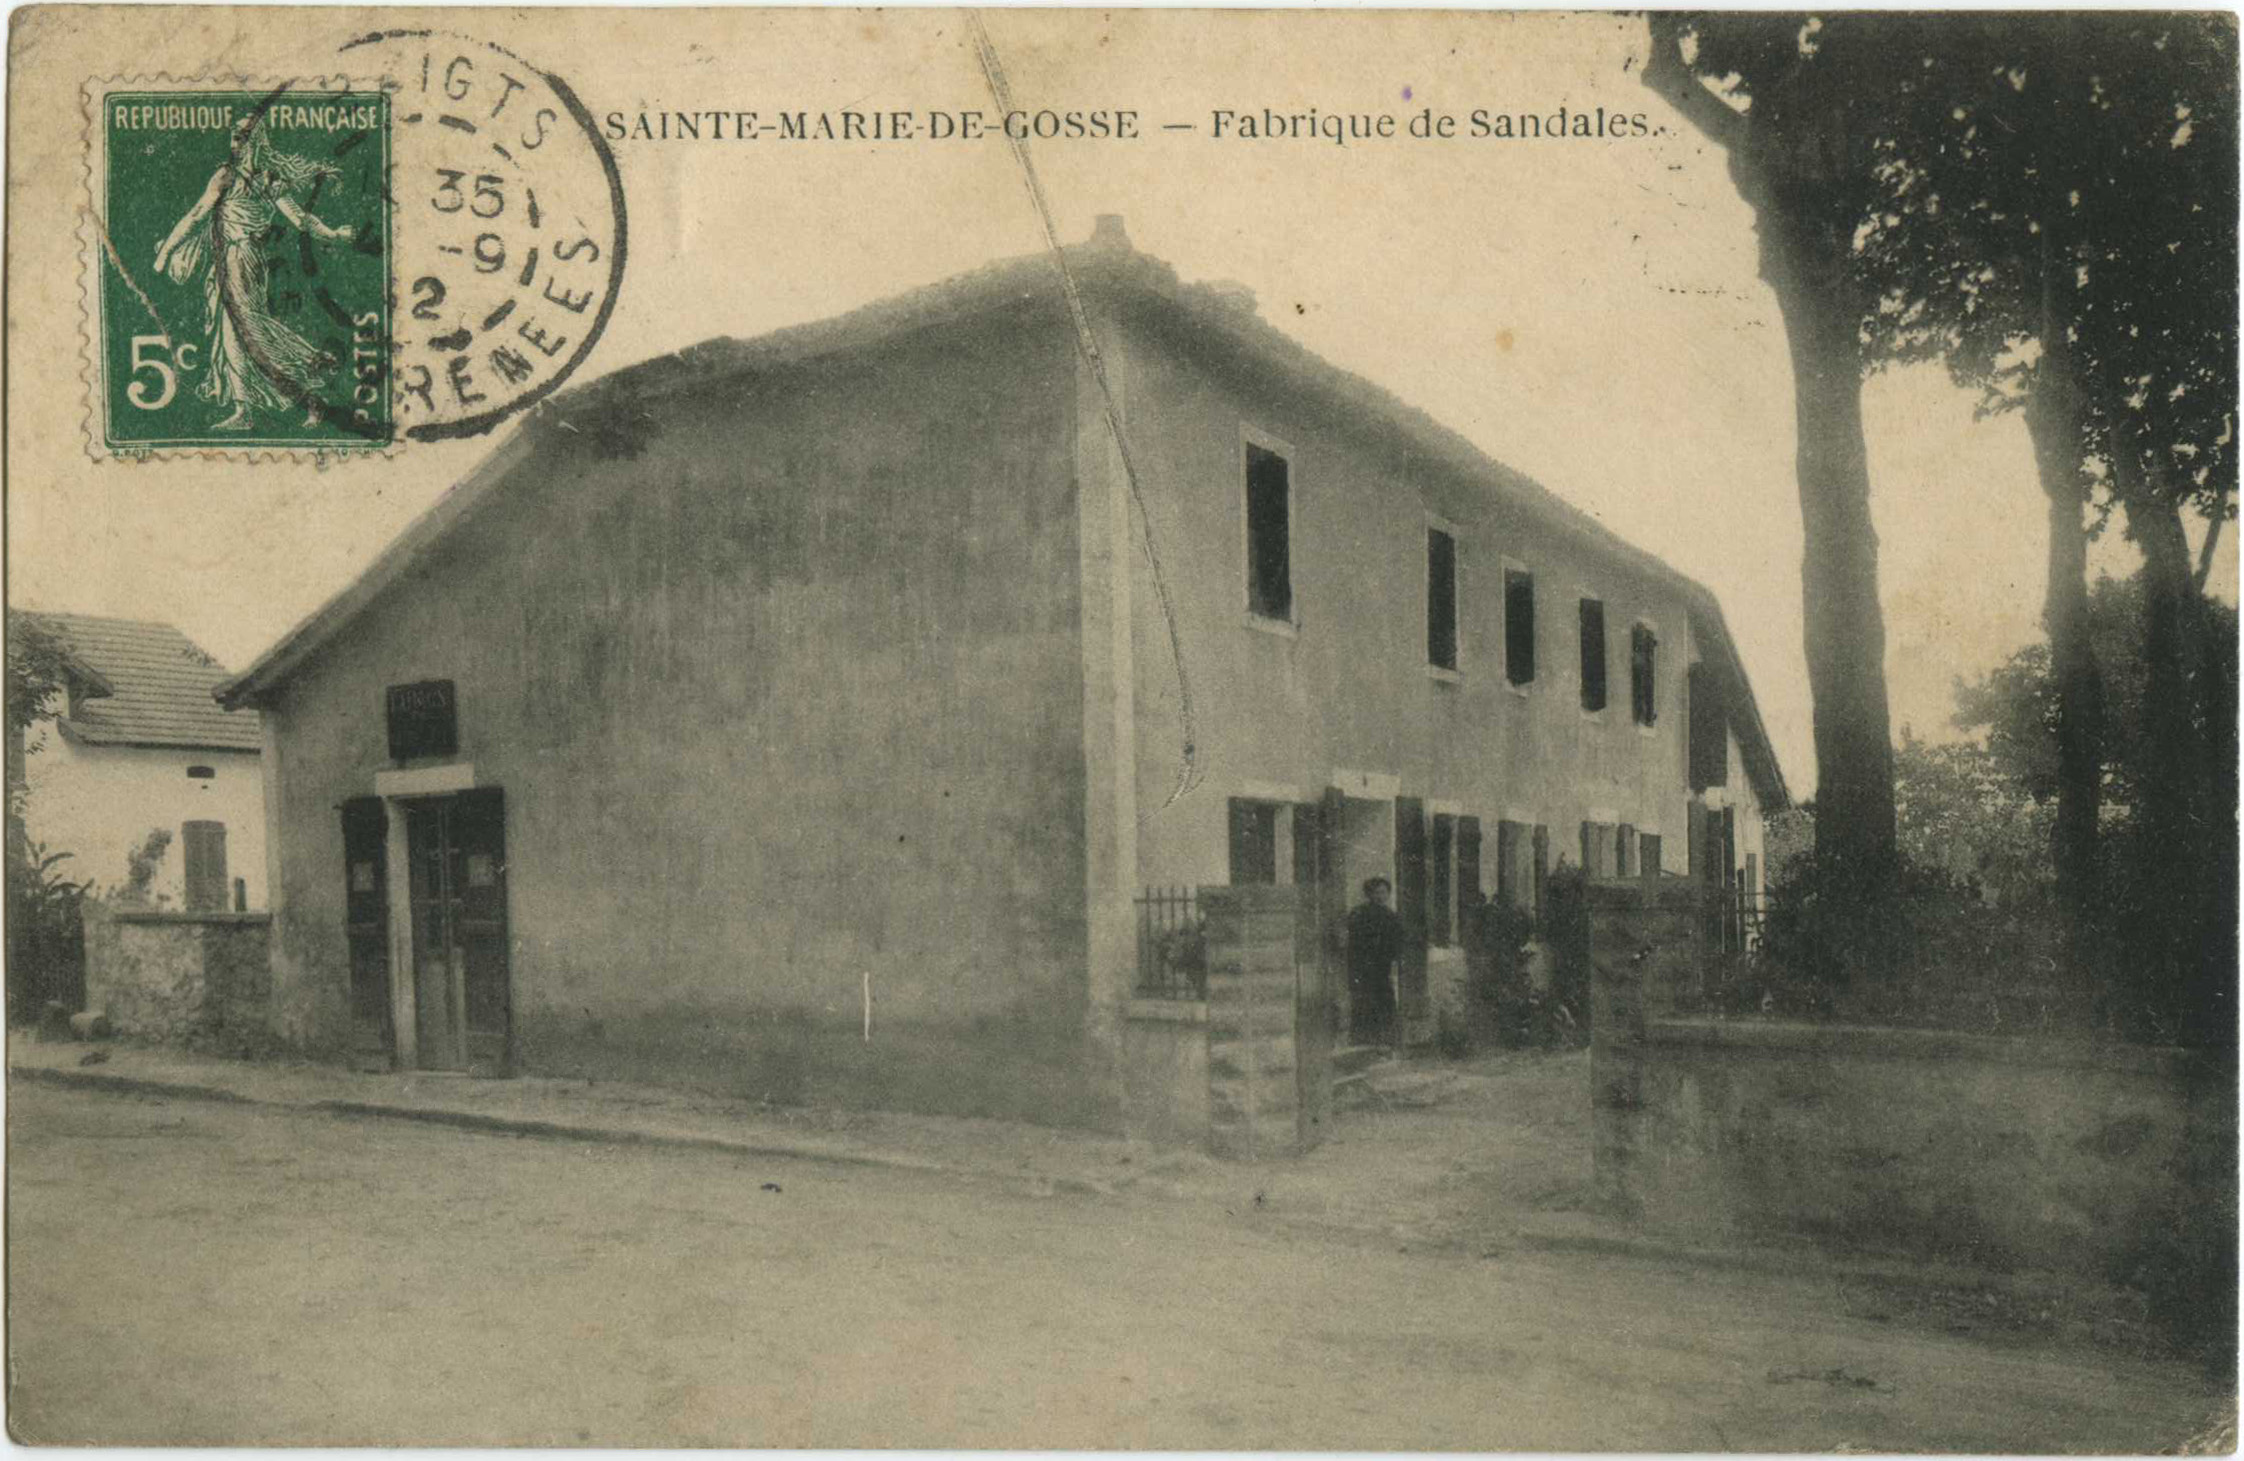 Sainte-Marie-de-Gosse - Fabrique de Sandales.